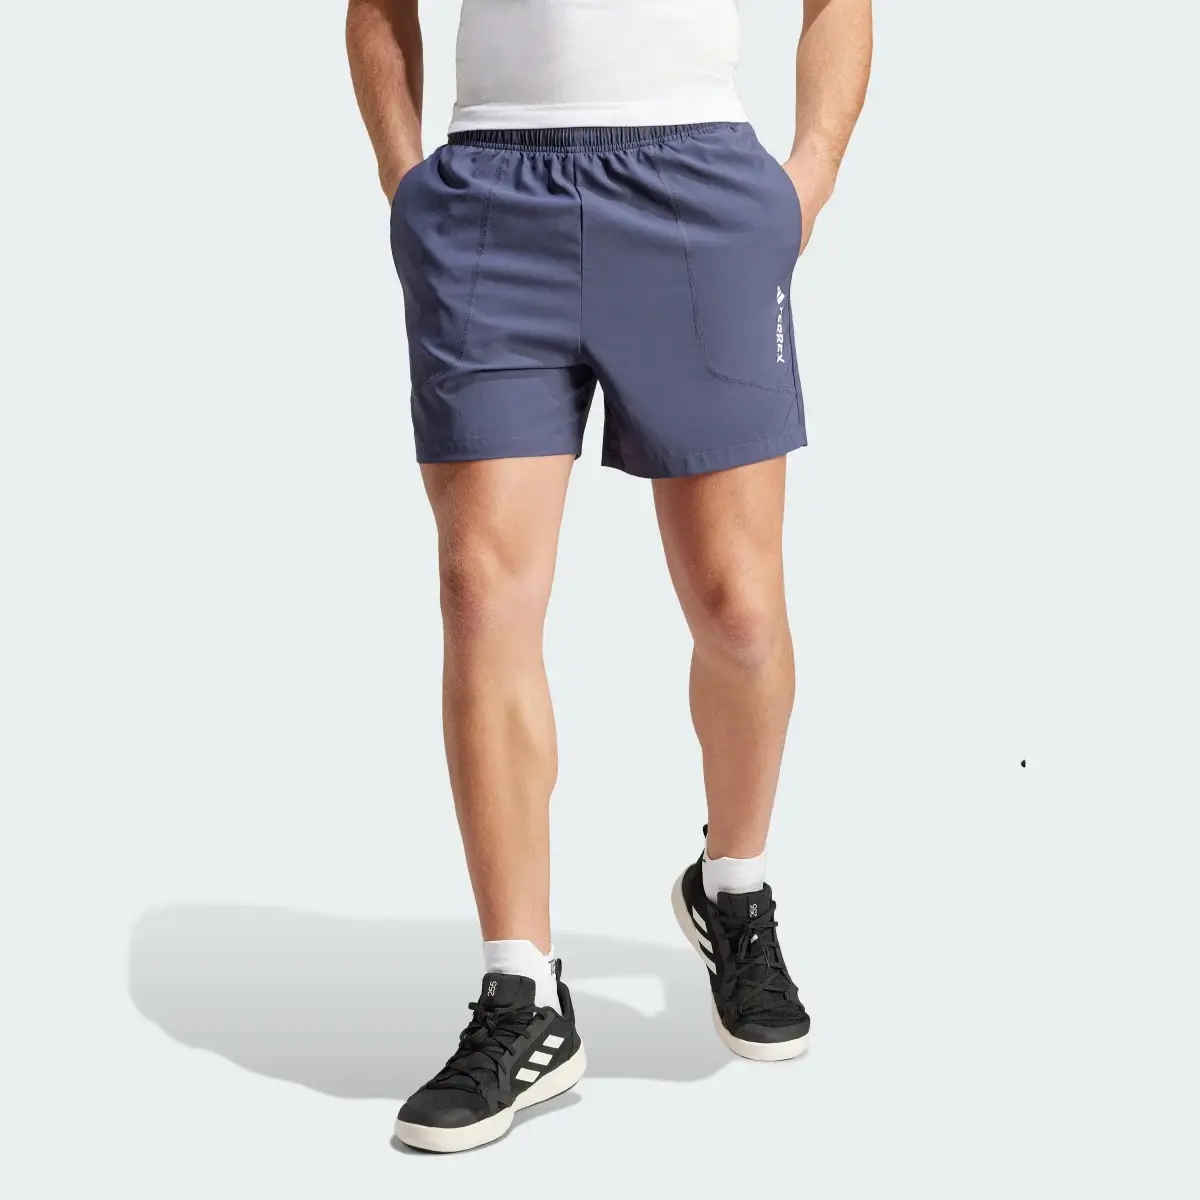 Adidas Terrex Multi Shorts. 2